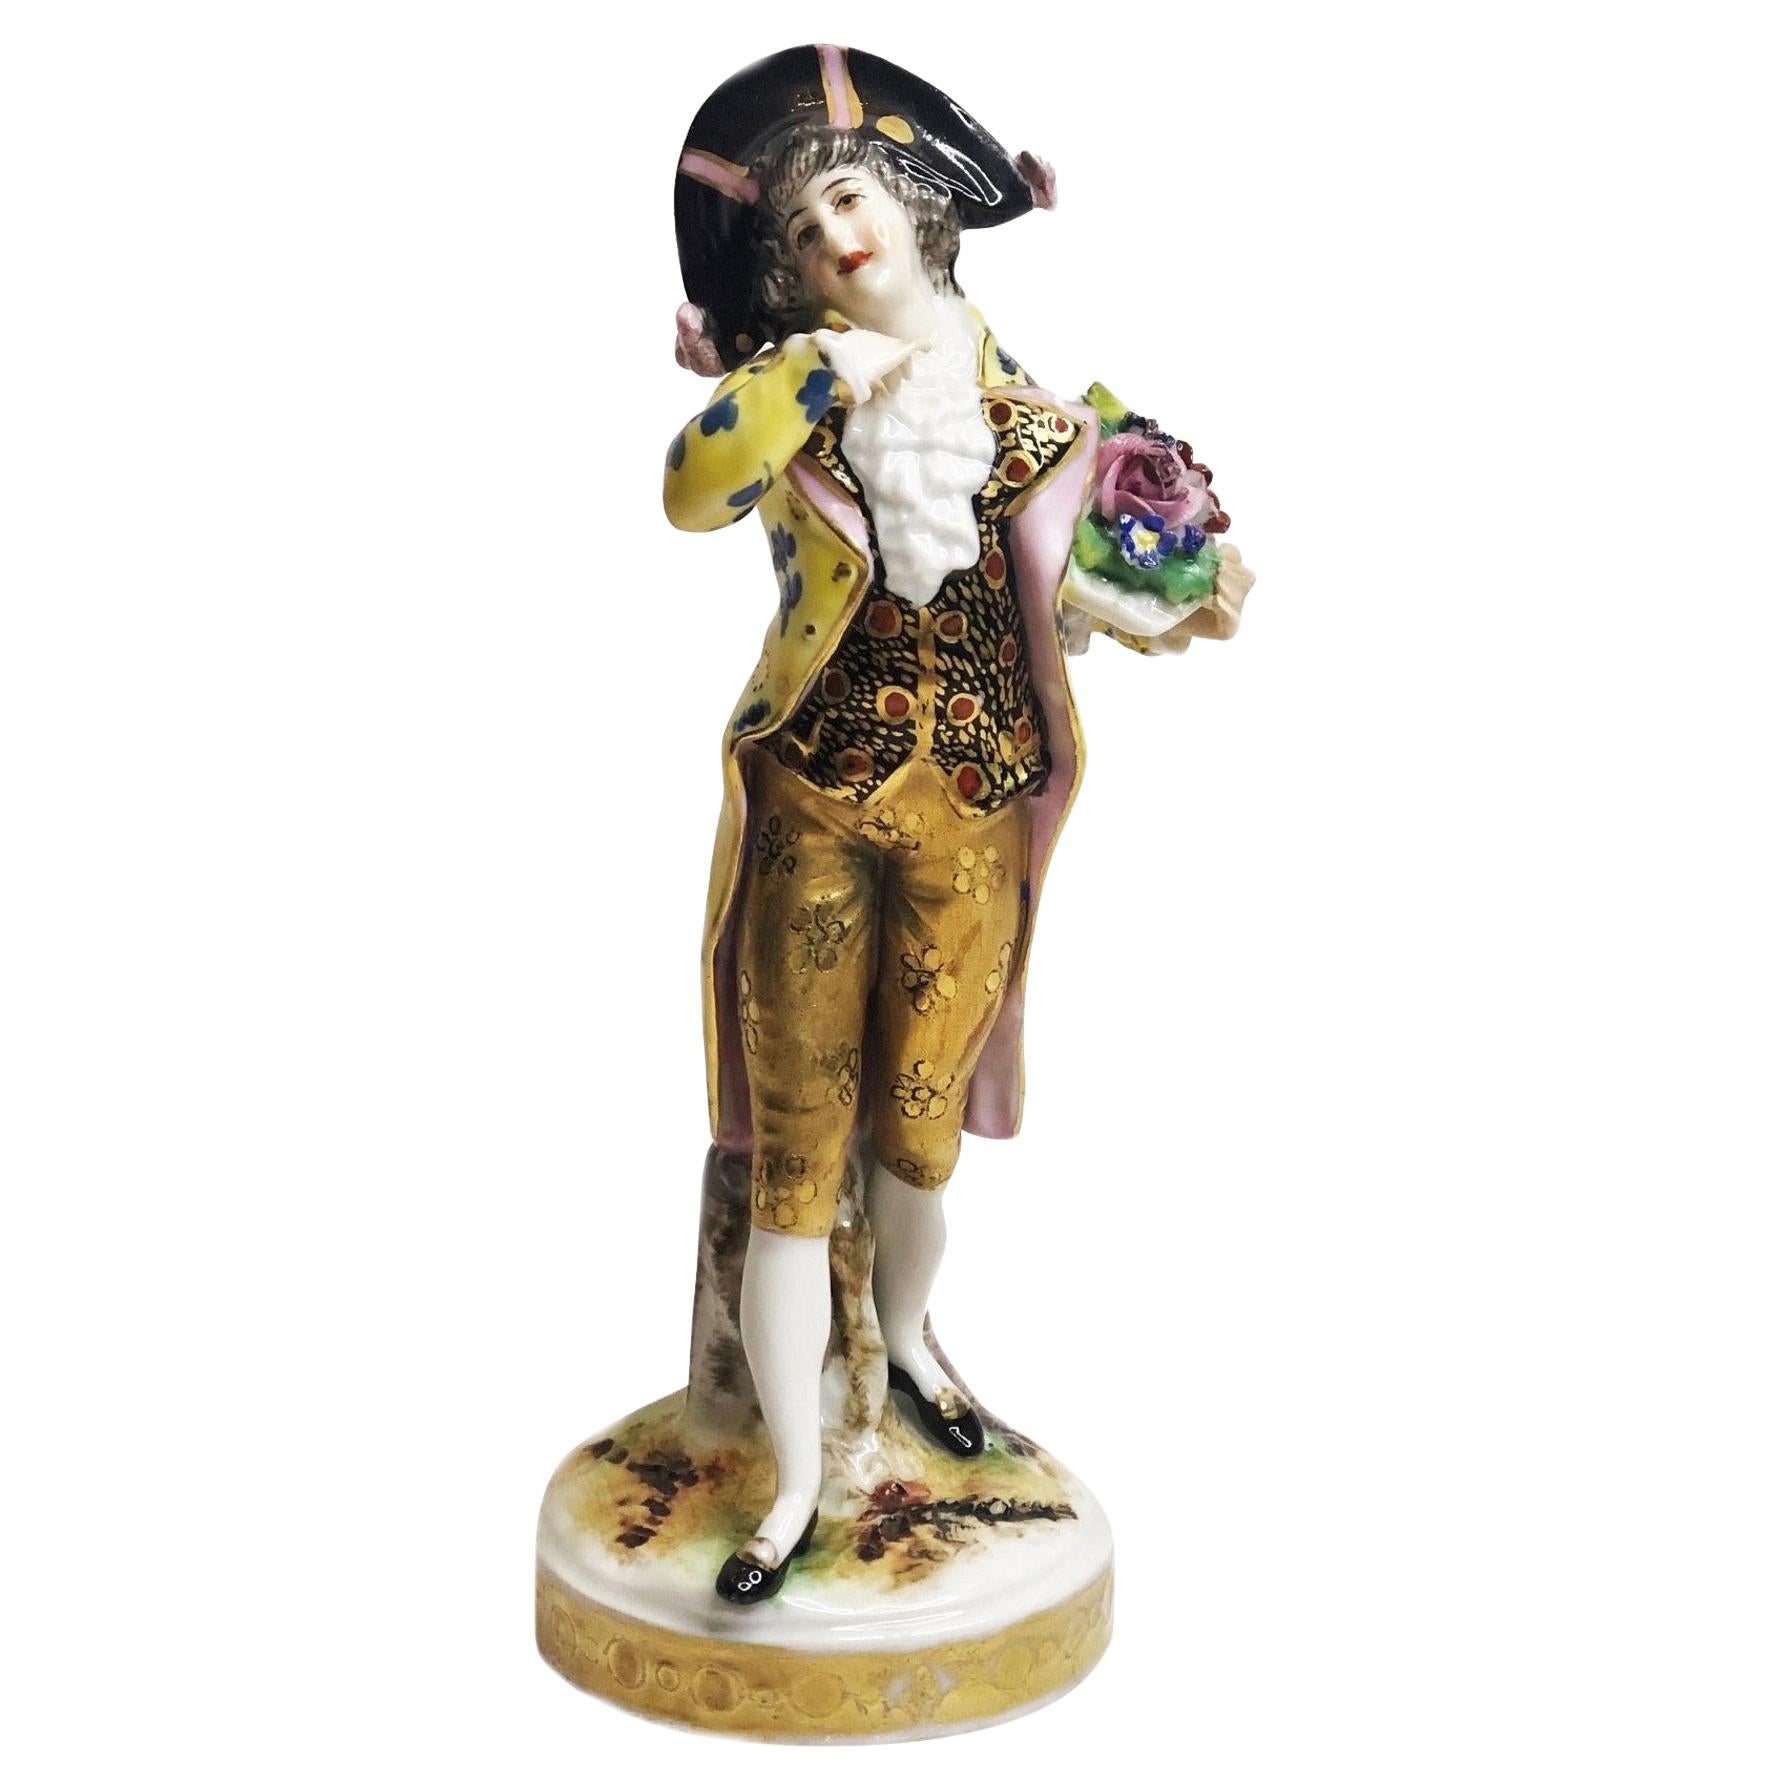 Figurine en porcelaine de Dresde deCarl Thieme, représentant un noble homme amoureux, vers 1870